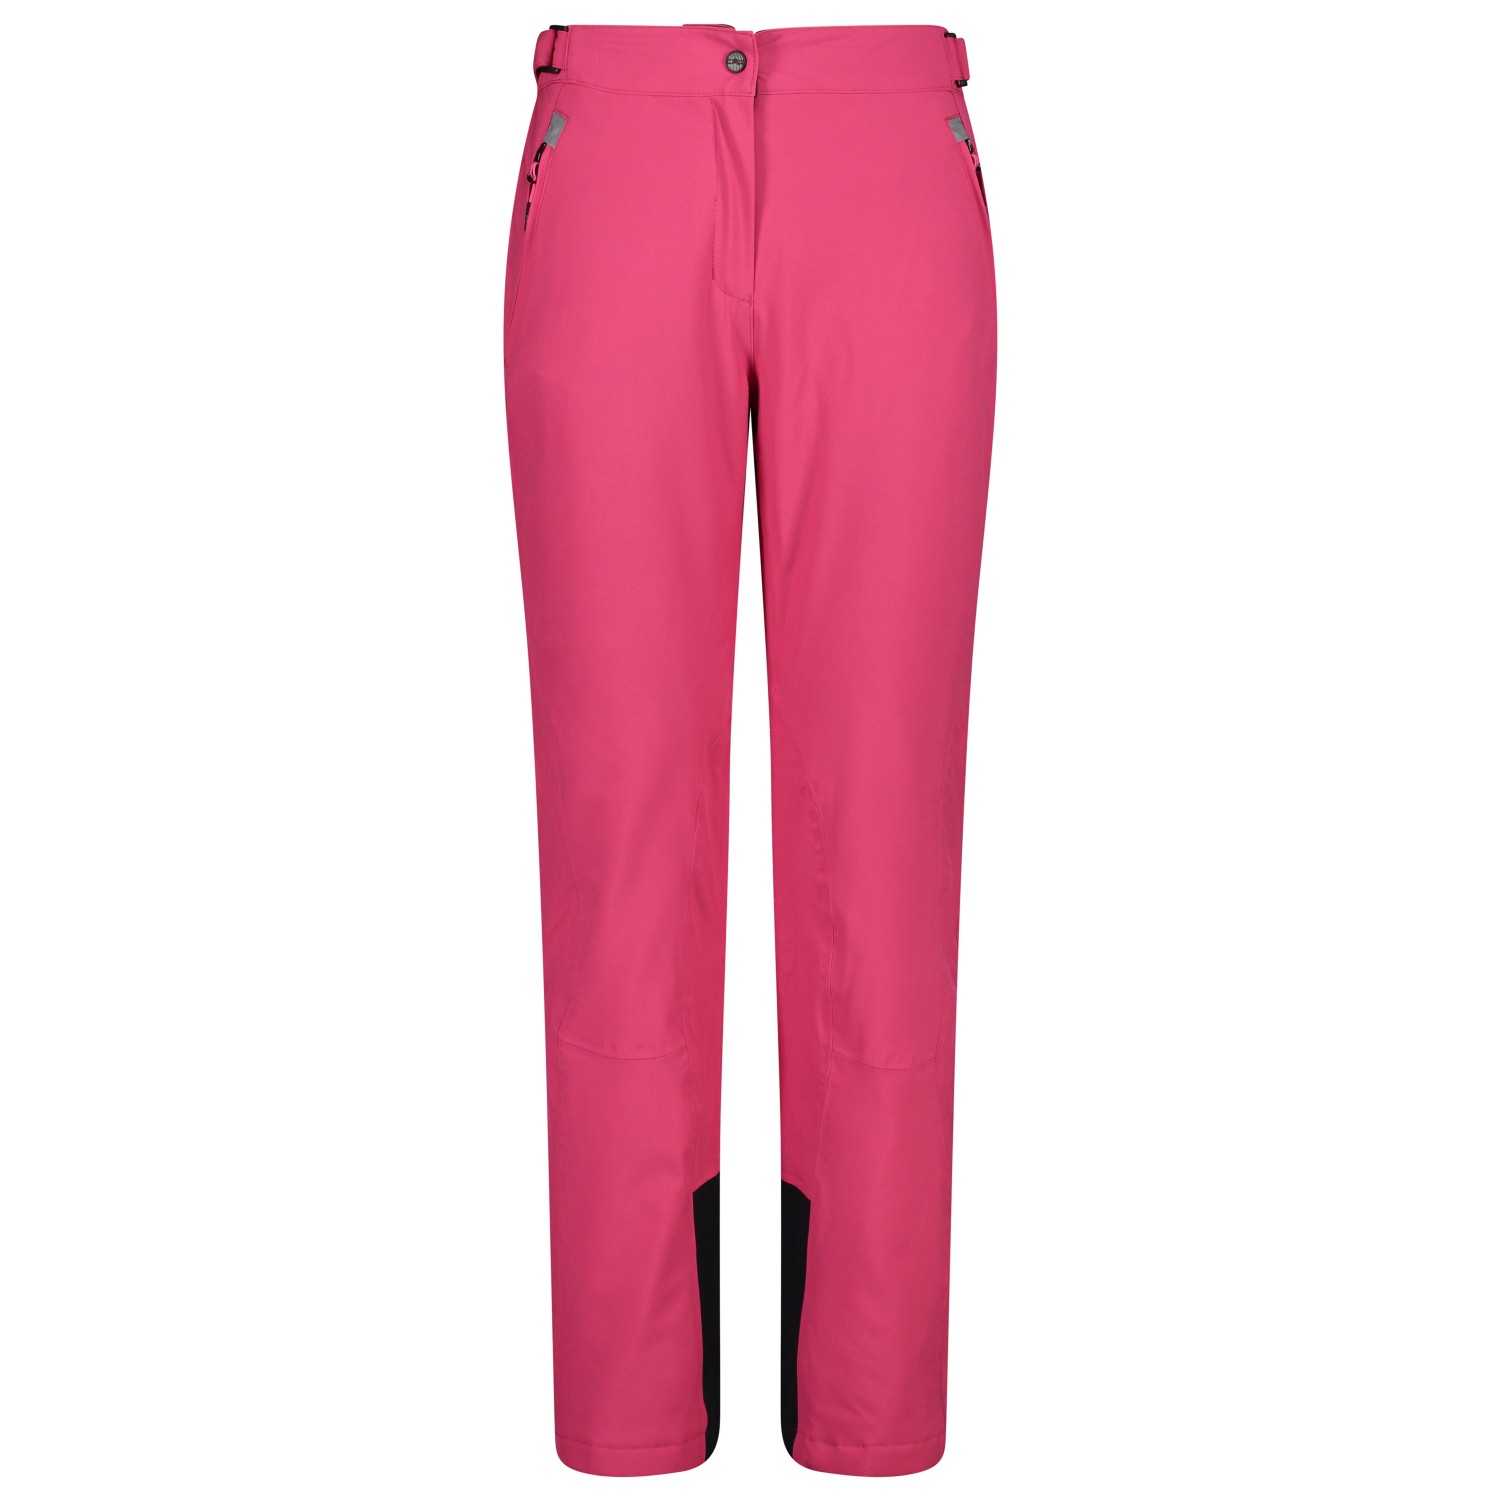 Лыжные штаны Cmp Women's Pant Stretch Polyester 3W18596N, фуксия